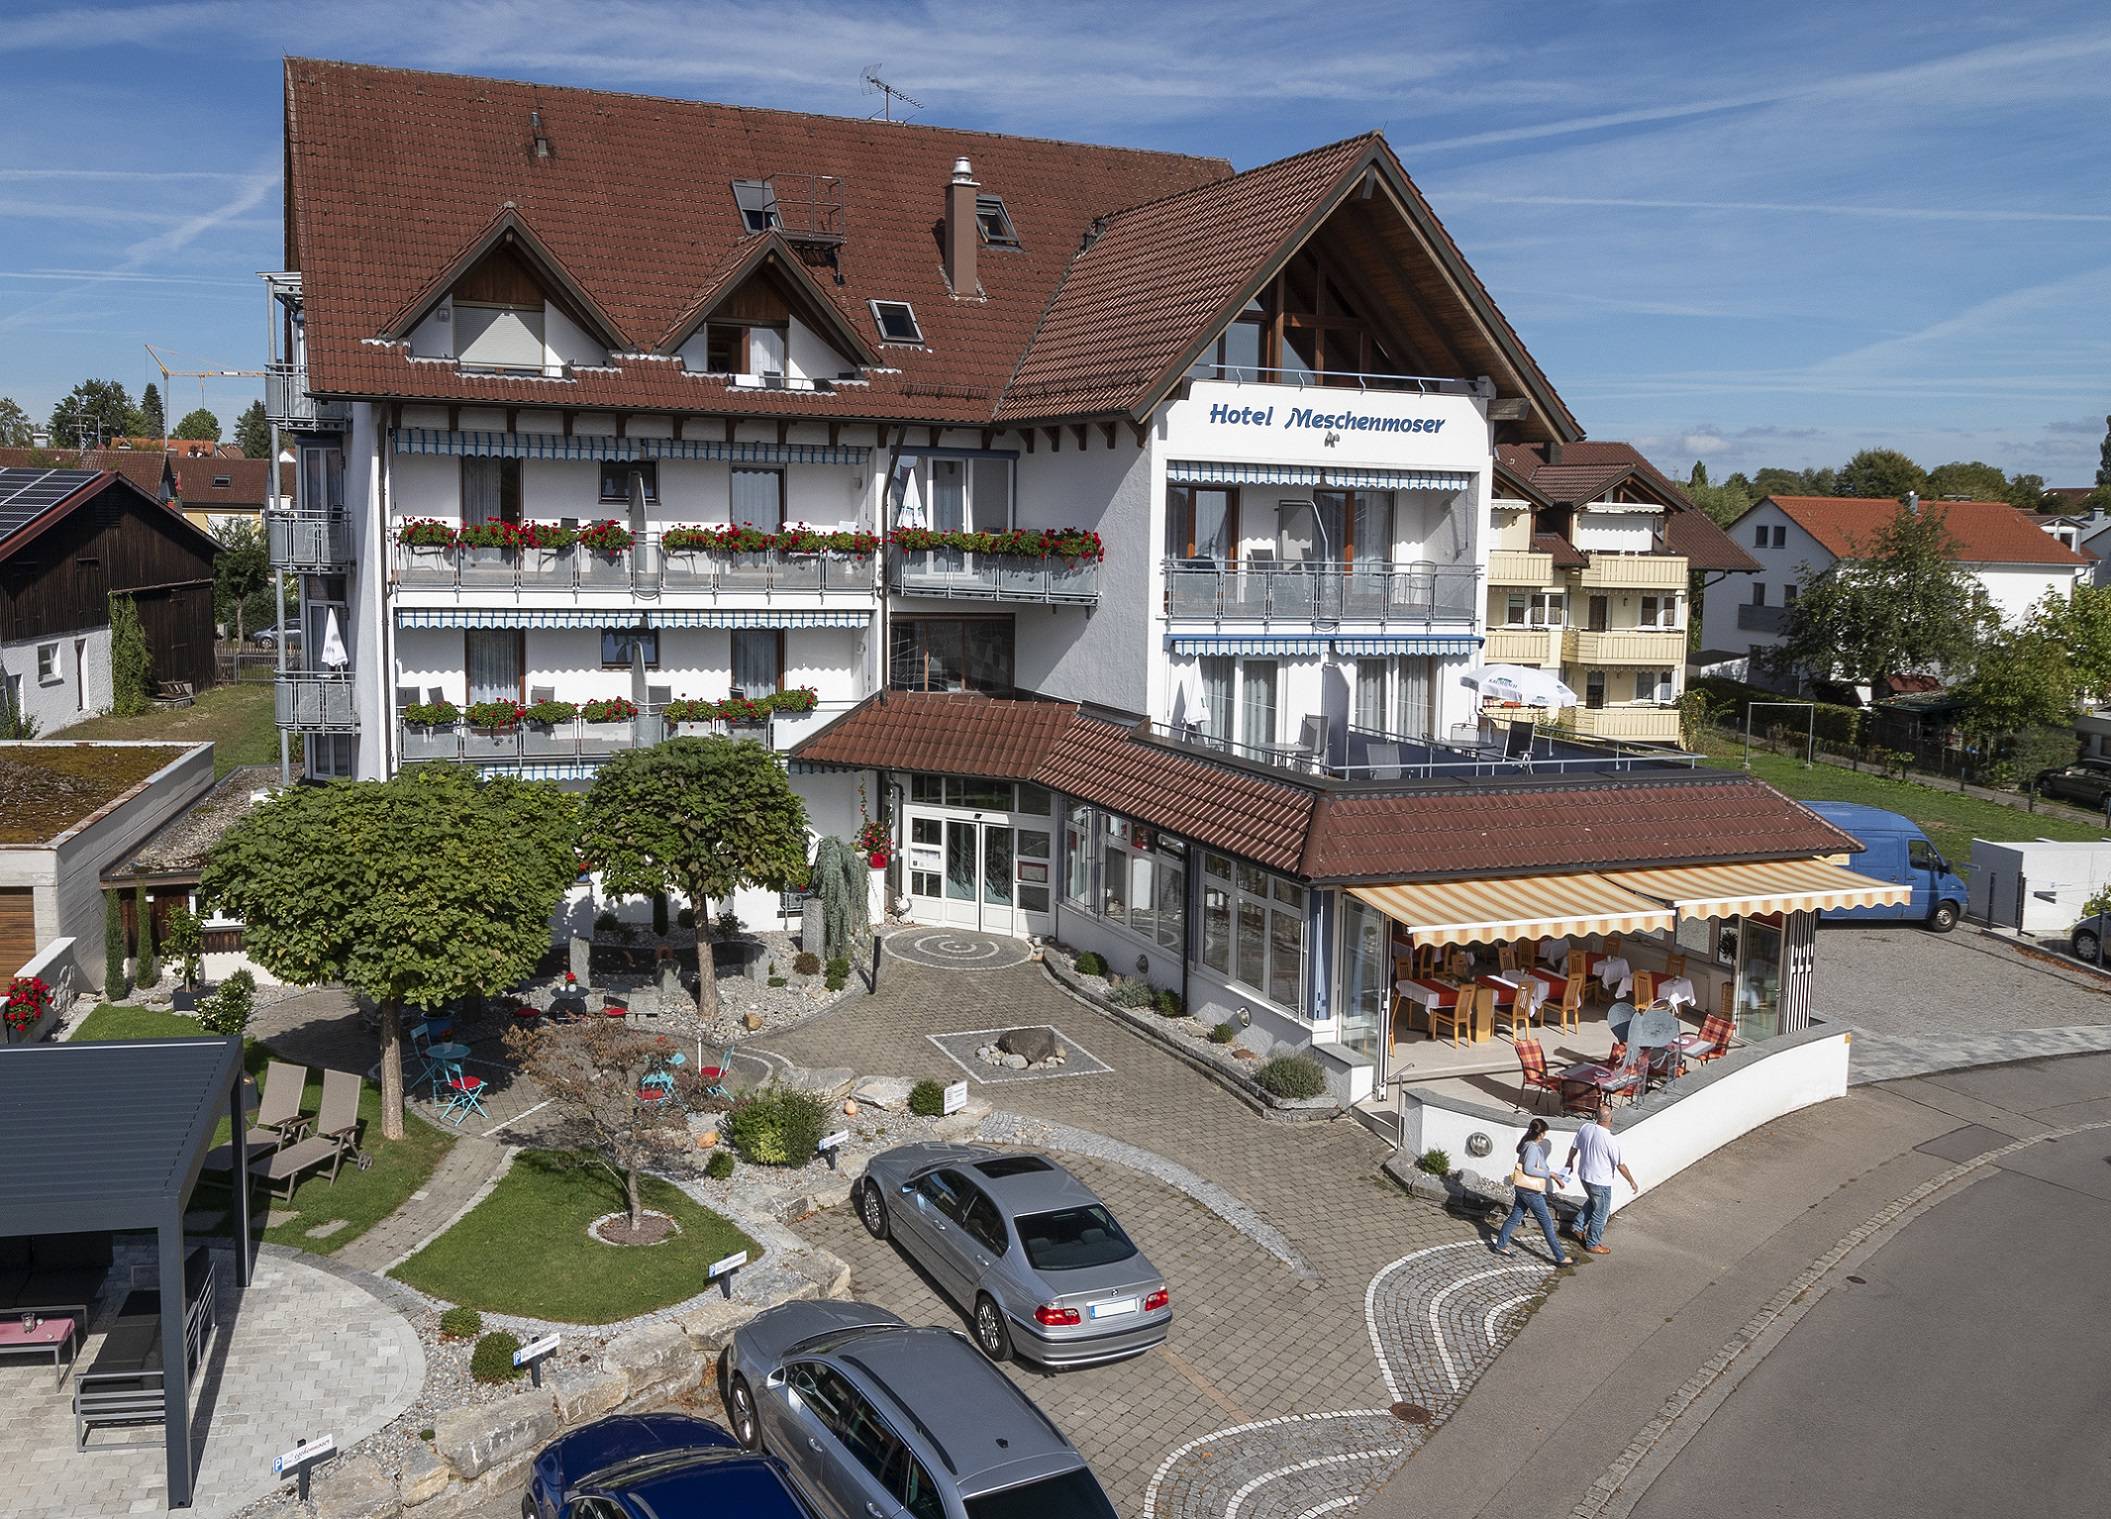 Hotel Meschenmoser Hotel am Bodensee